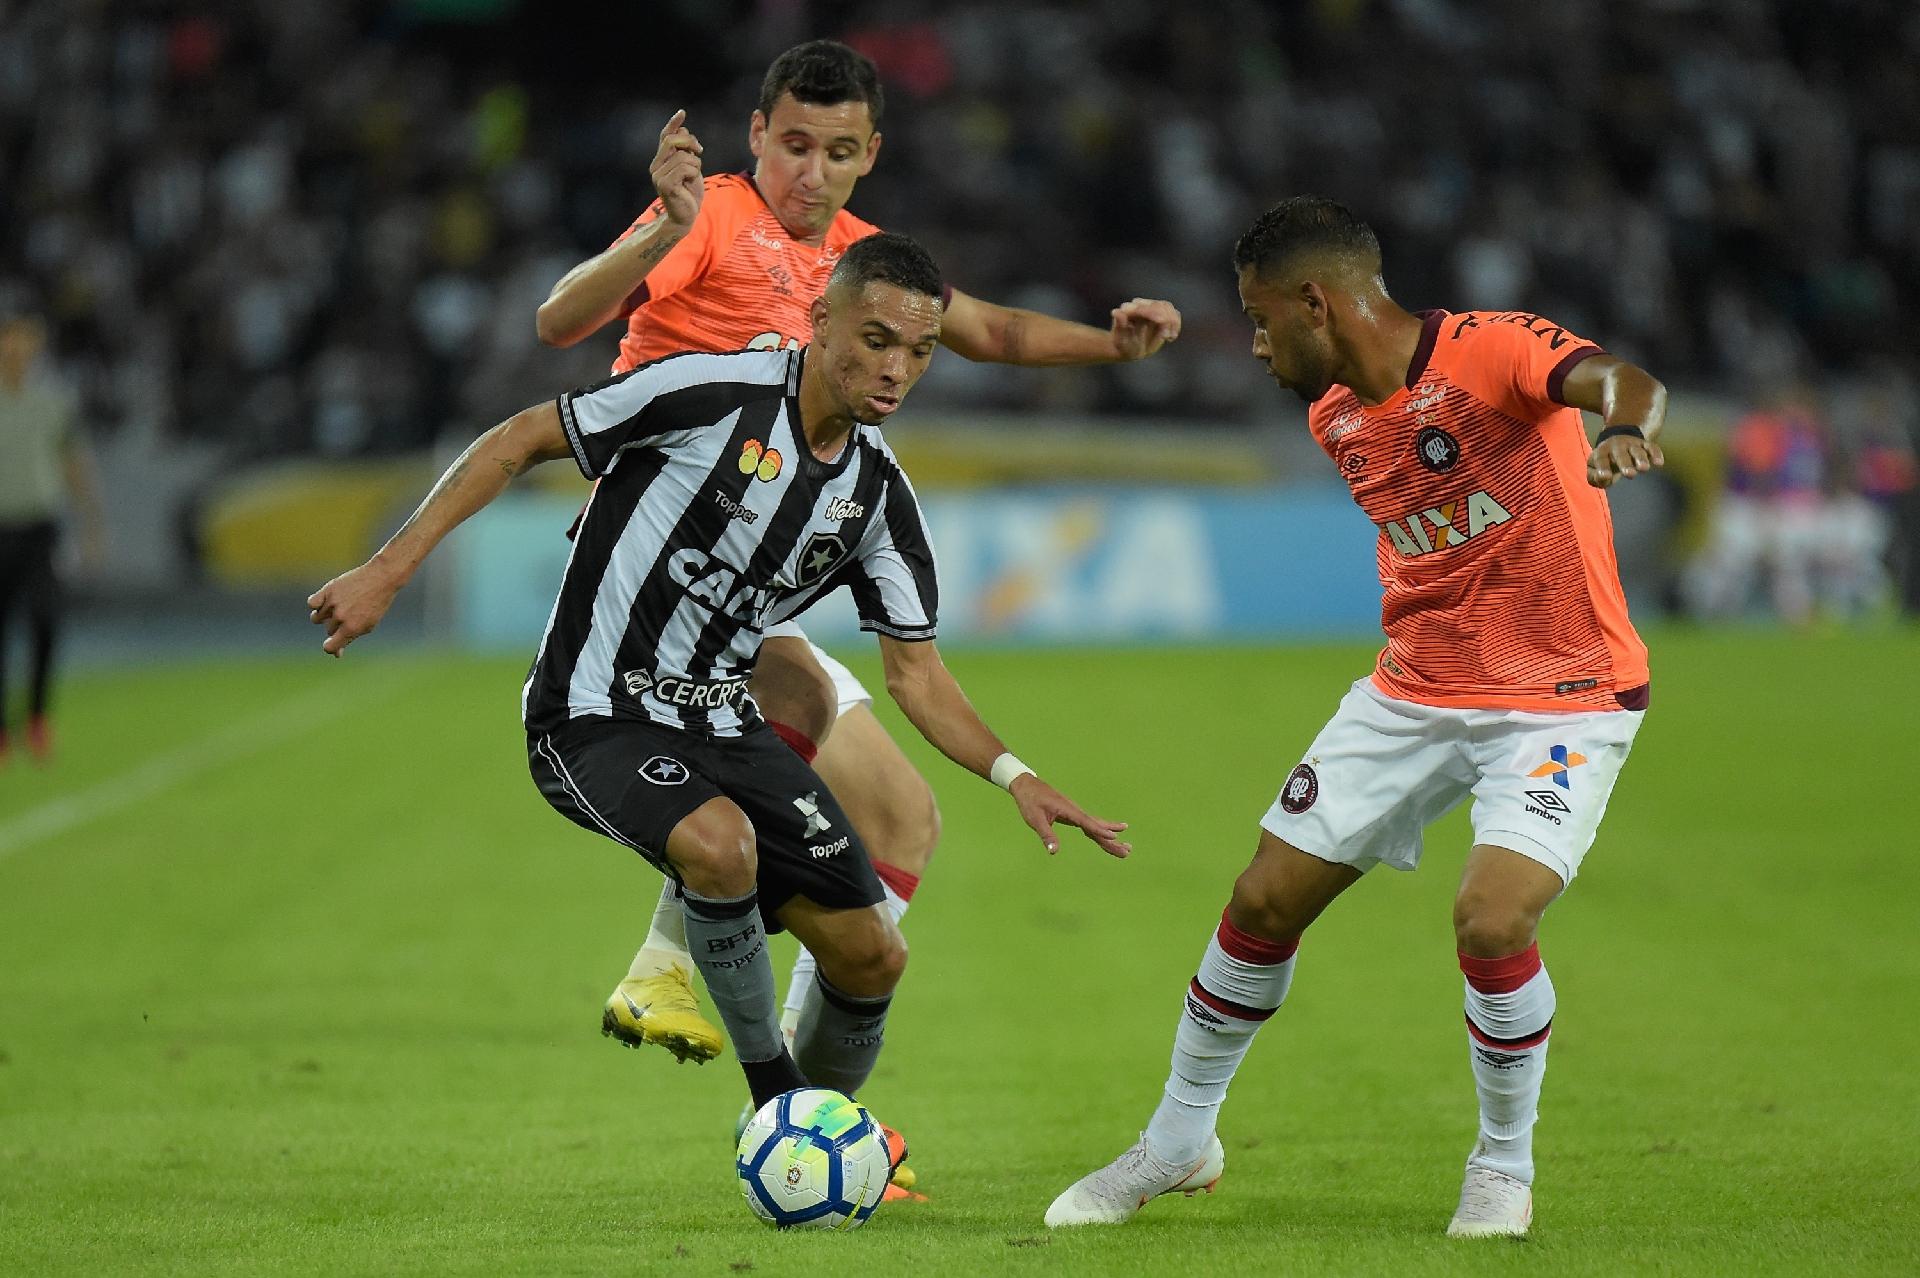 Botafogo vs Atl Paranaense – Nhận định kèo bóng đá 05h15 07/01/2021 – VĐQG Brazil